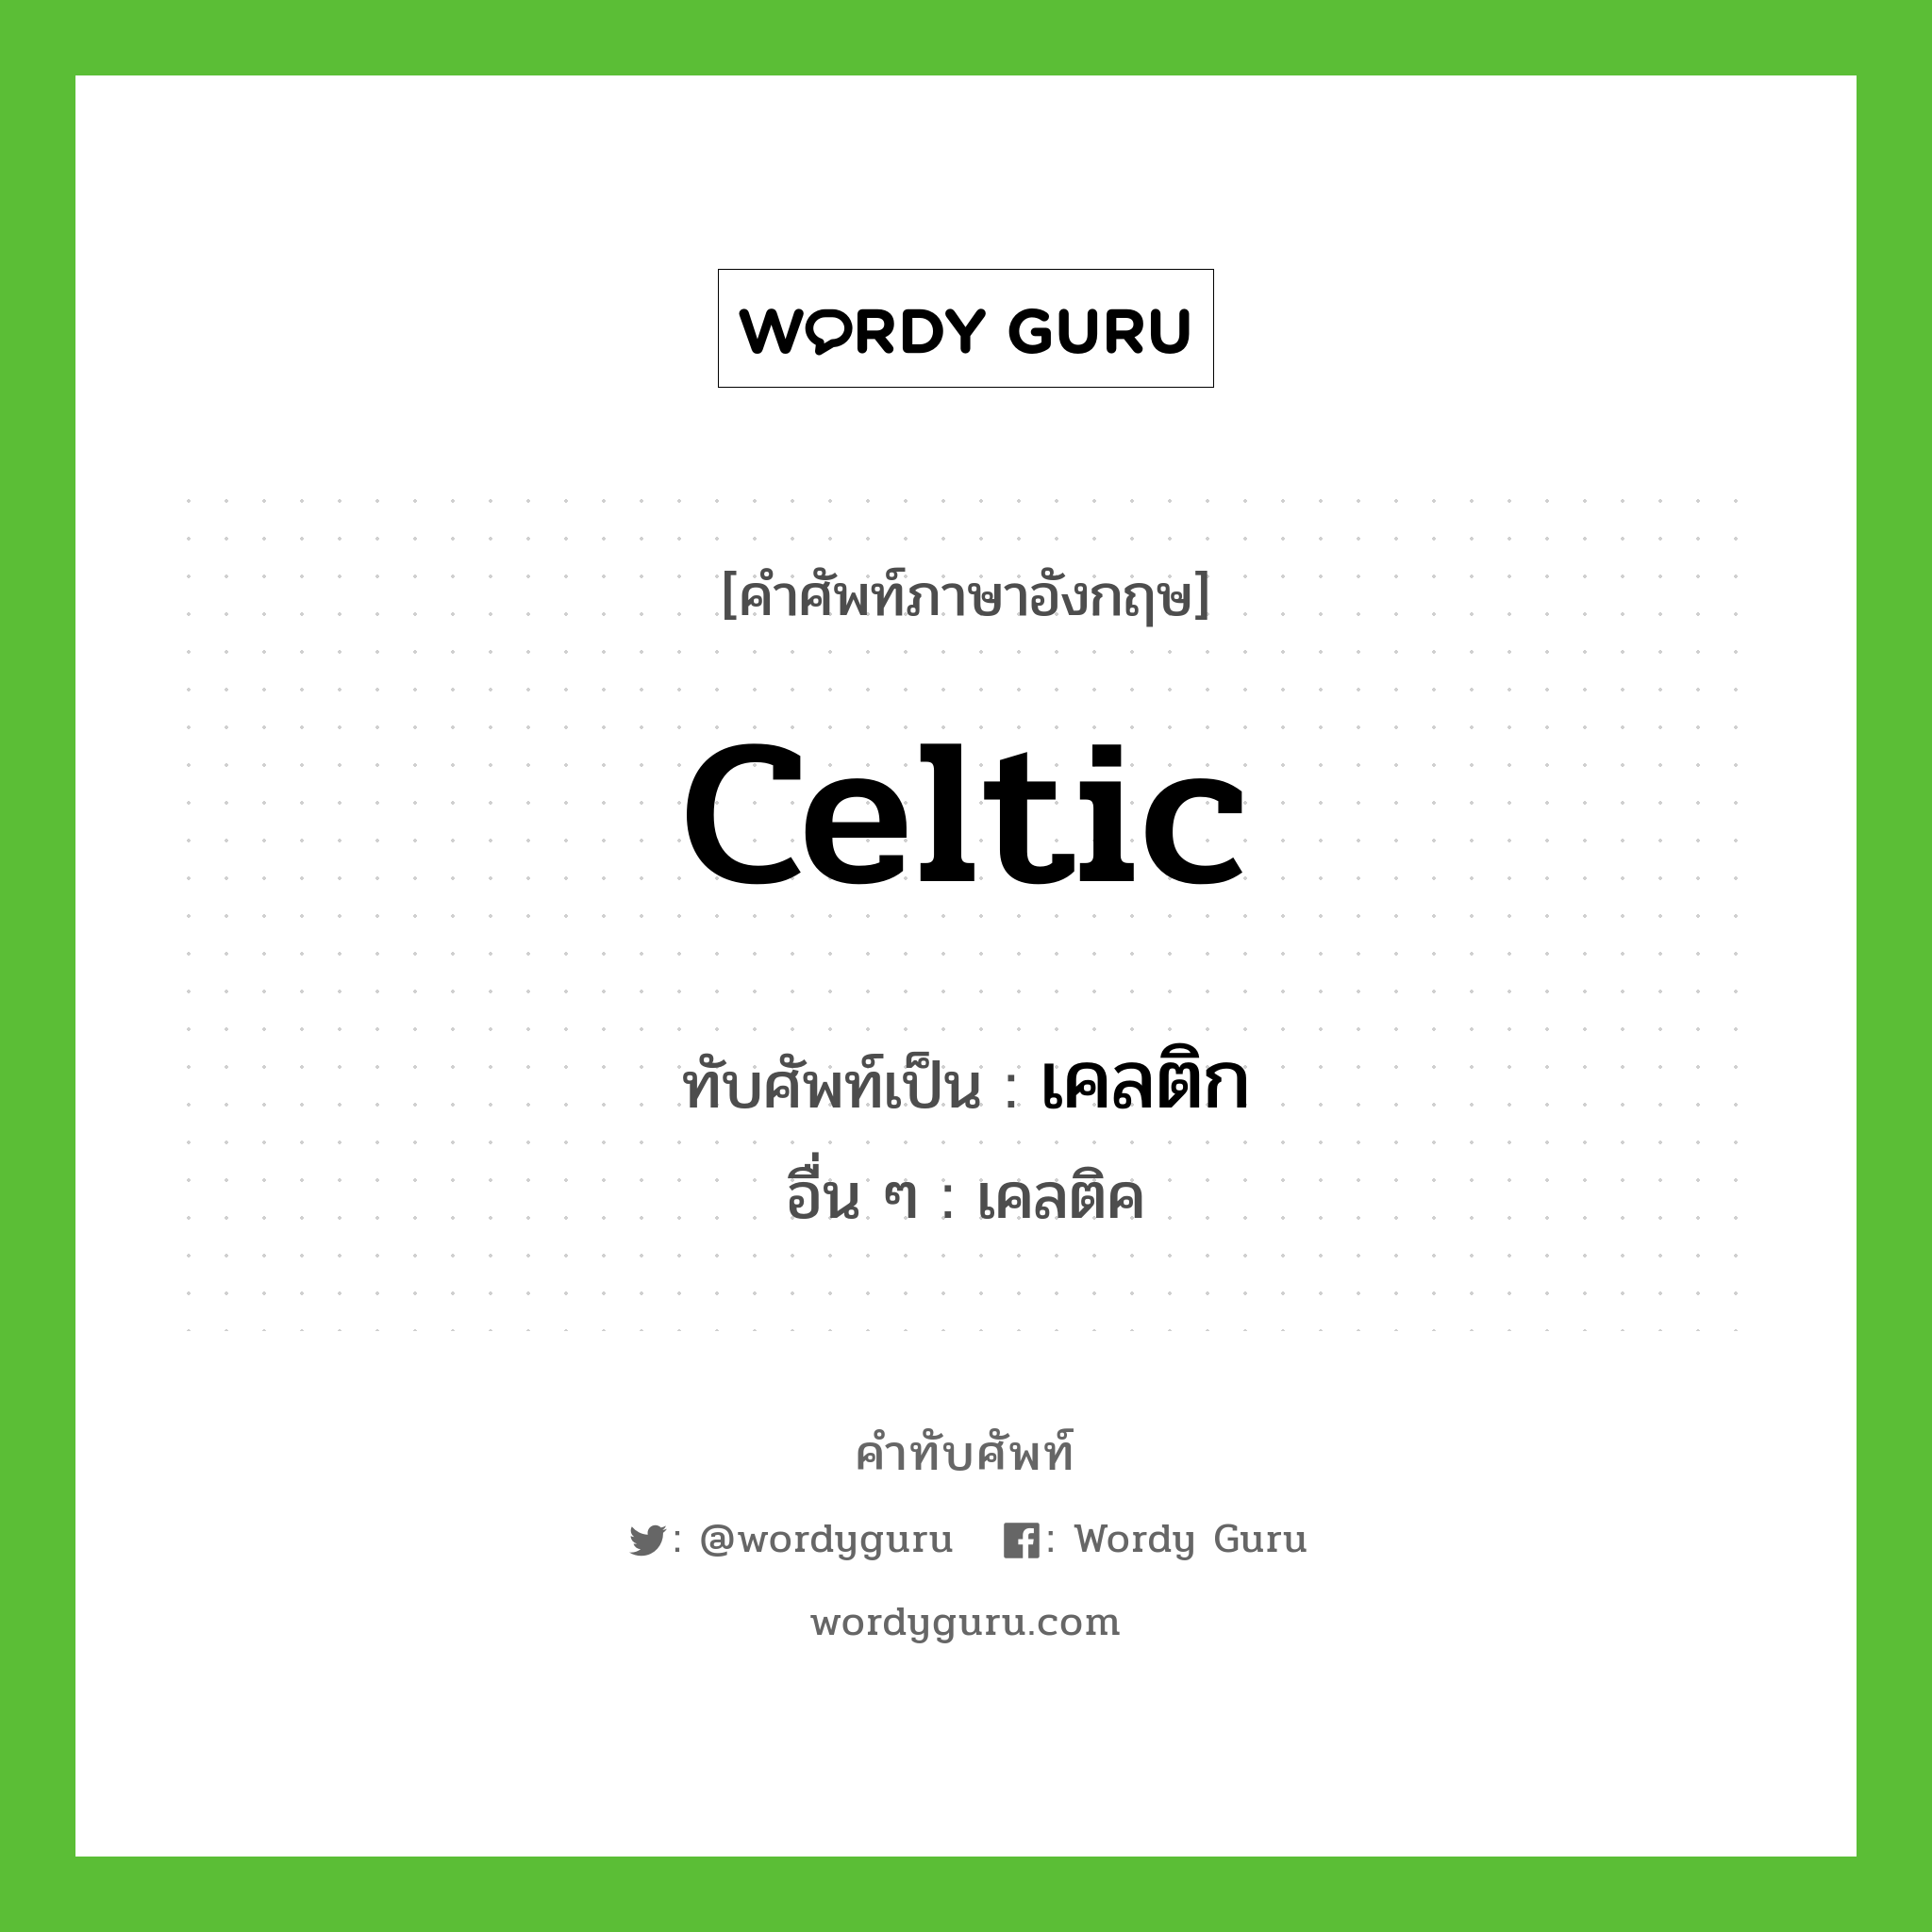 Celtic เขียนเป็นคำไทยว่าอะไร?, คำศัพท์ภาษาอังกฤษ Celtic ทับศัพท์เป็น เคลติก อื่น ๆ เคลติค